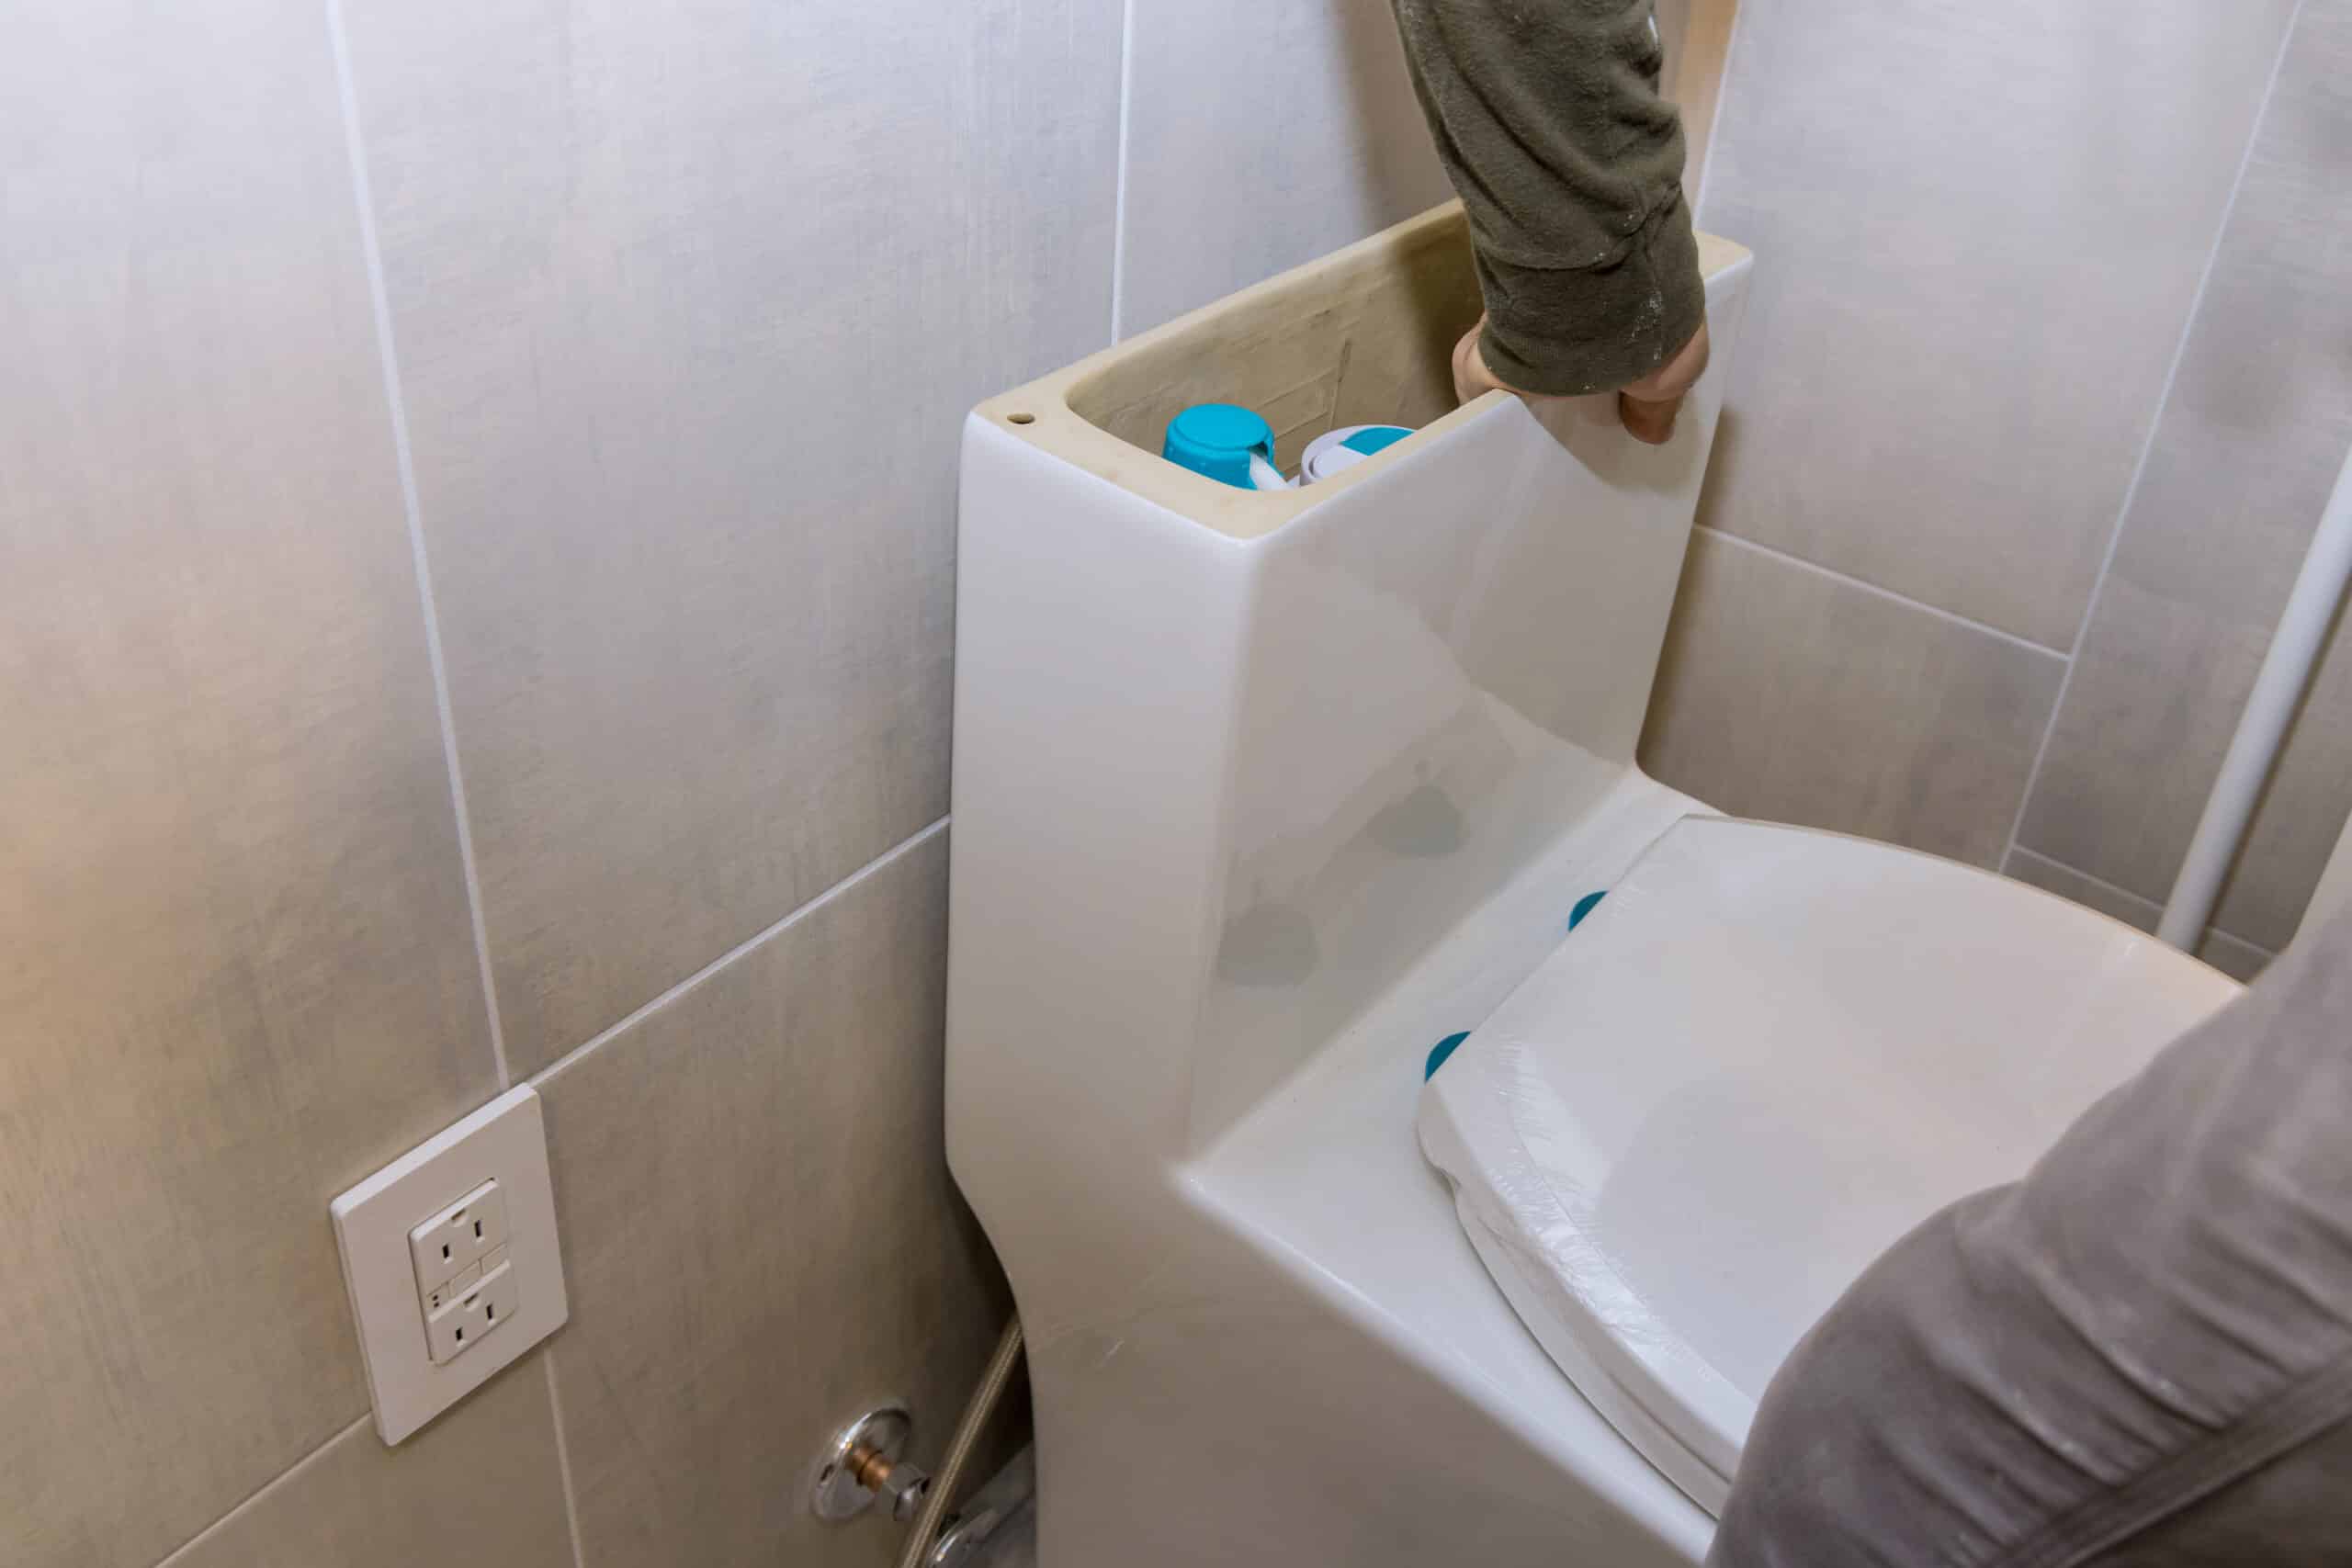 Comment régler un flotteur WC? - Guide Plomberie